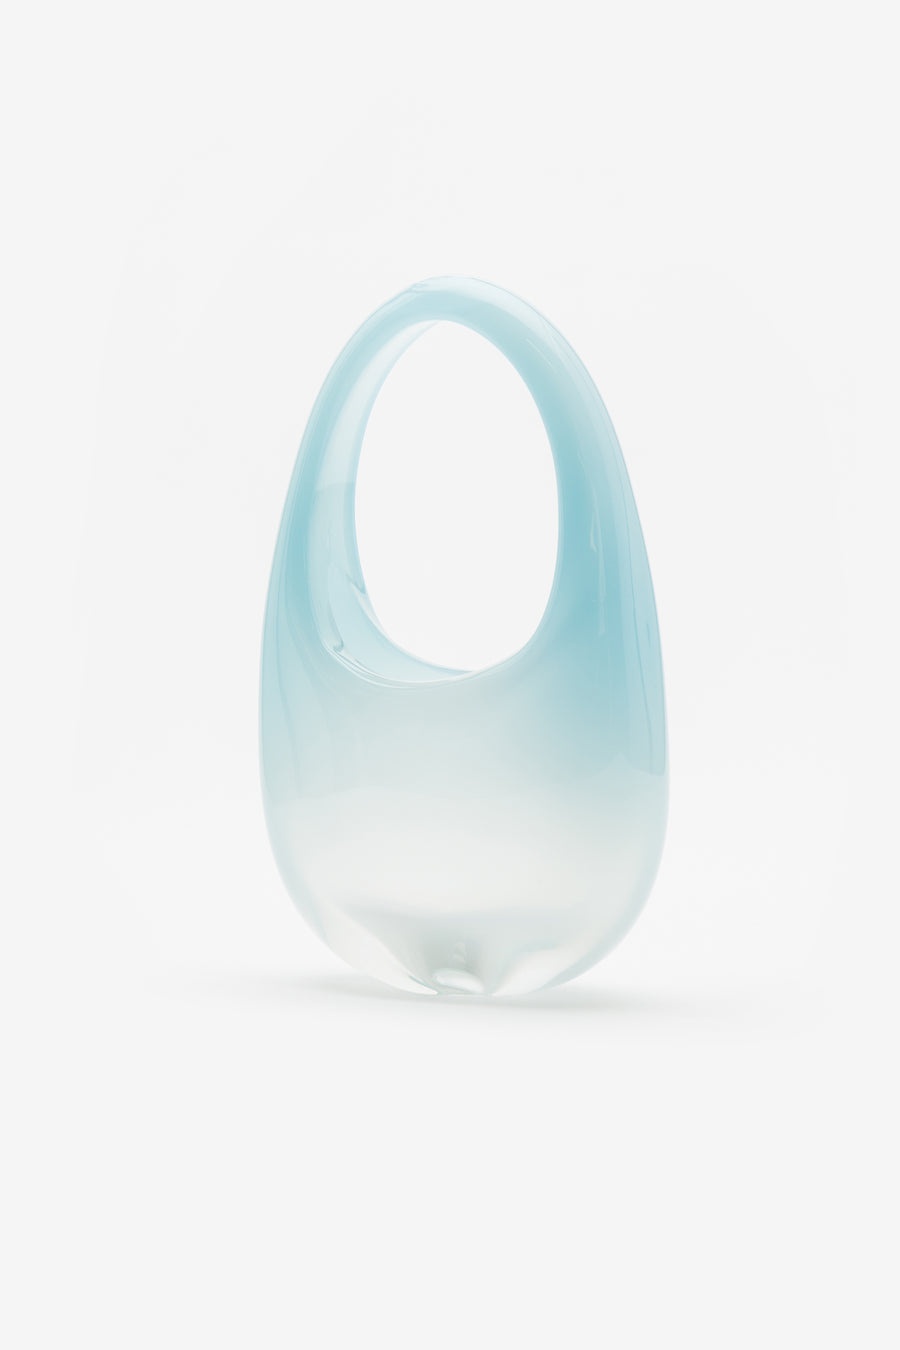 Heven Glass Swipe in Turquoise - 3